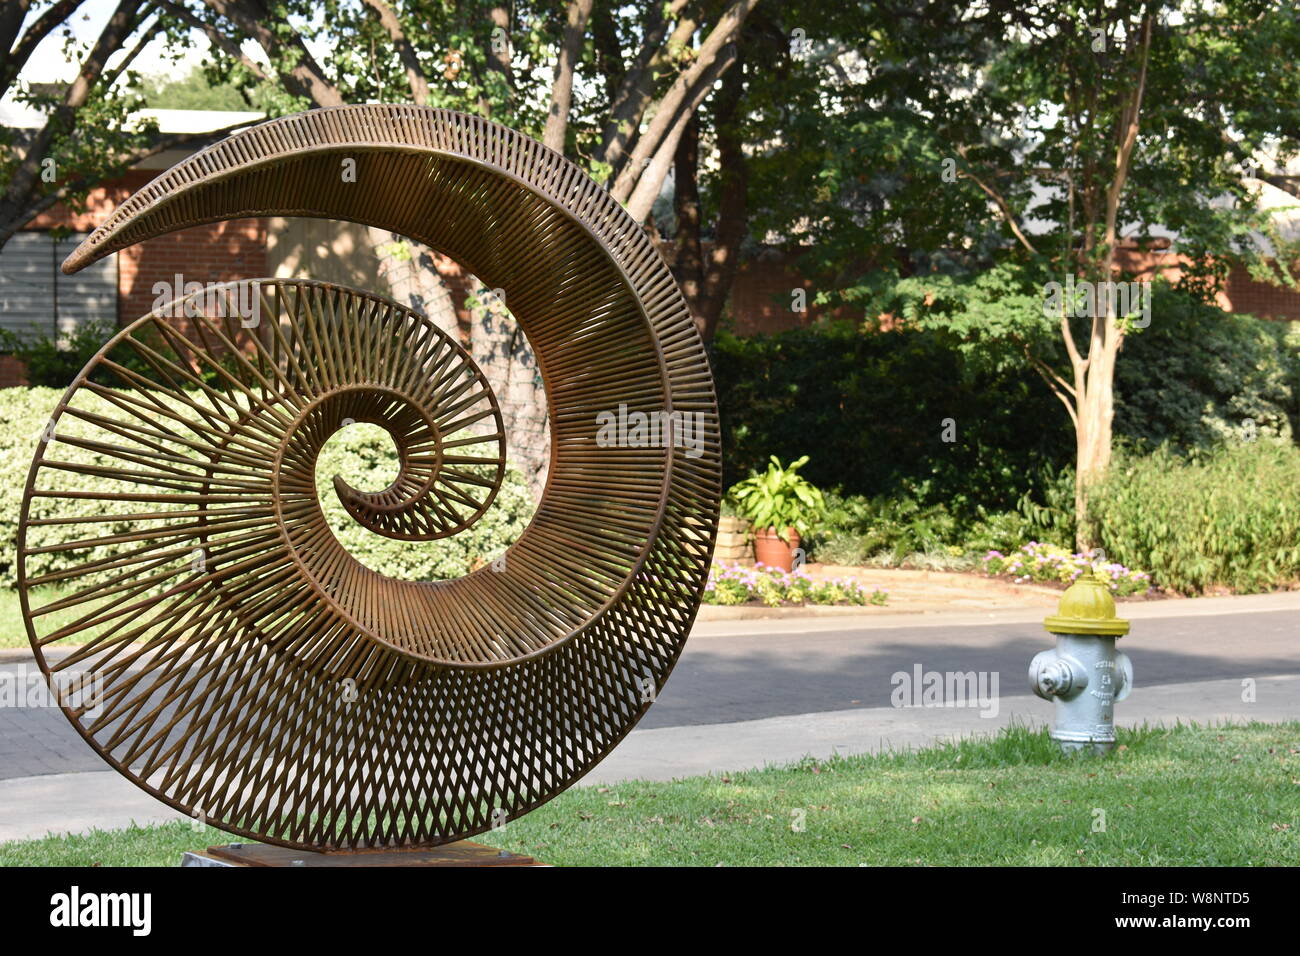 Spiral Sculpture in Dallas Stock Photo